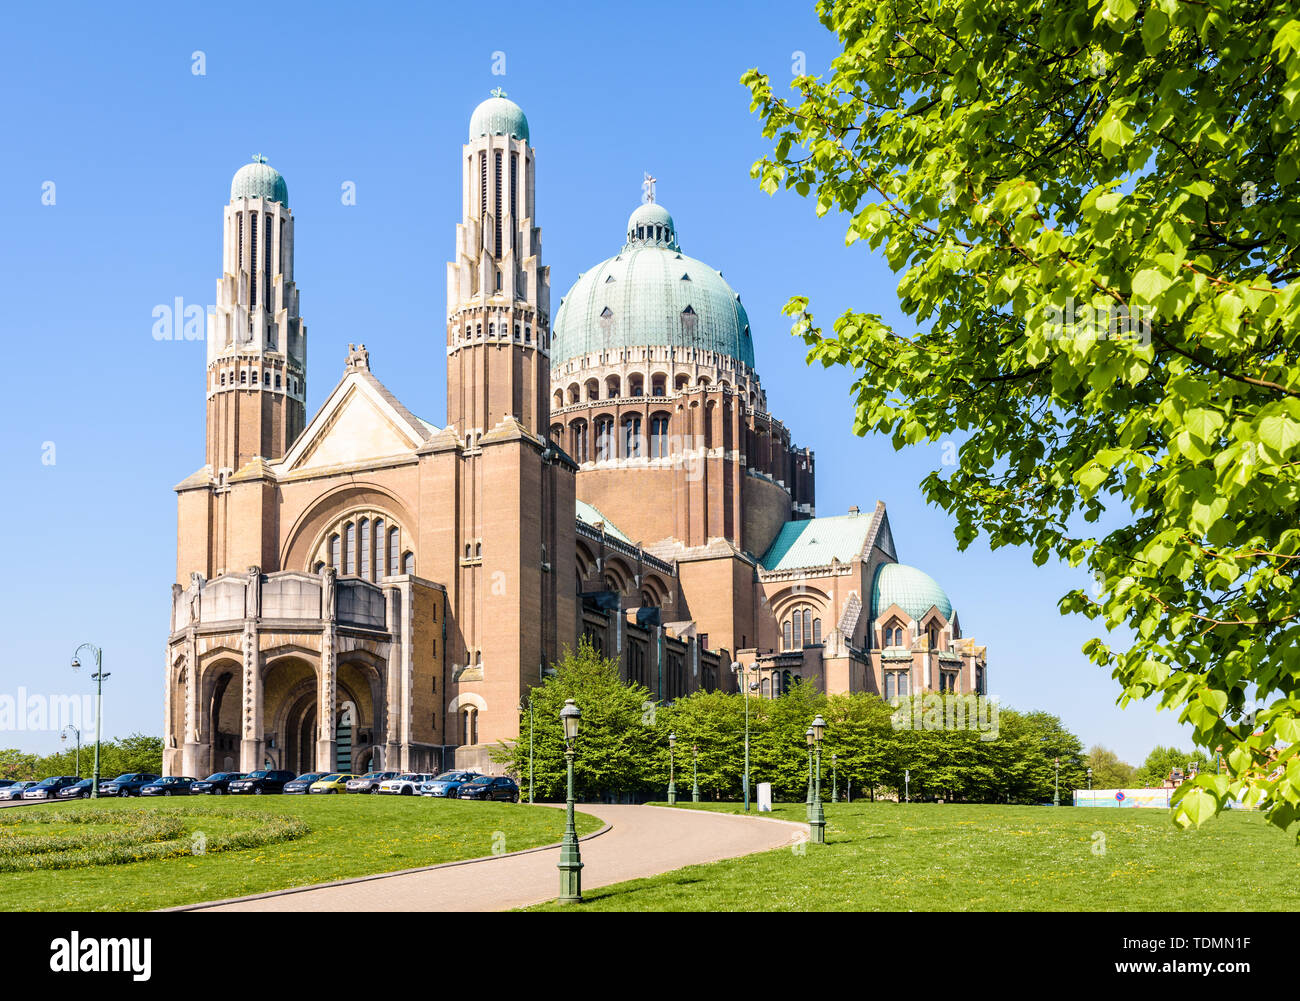 Tre quarti di vista frontale della Basilica nazionale del Sacro Cuore, situato nell'Elisabeth Park in Koekelberg, Regione di Bruxelles-Capitale, Belgio. Foto Stock